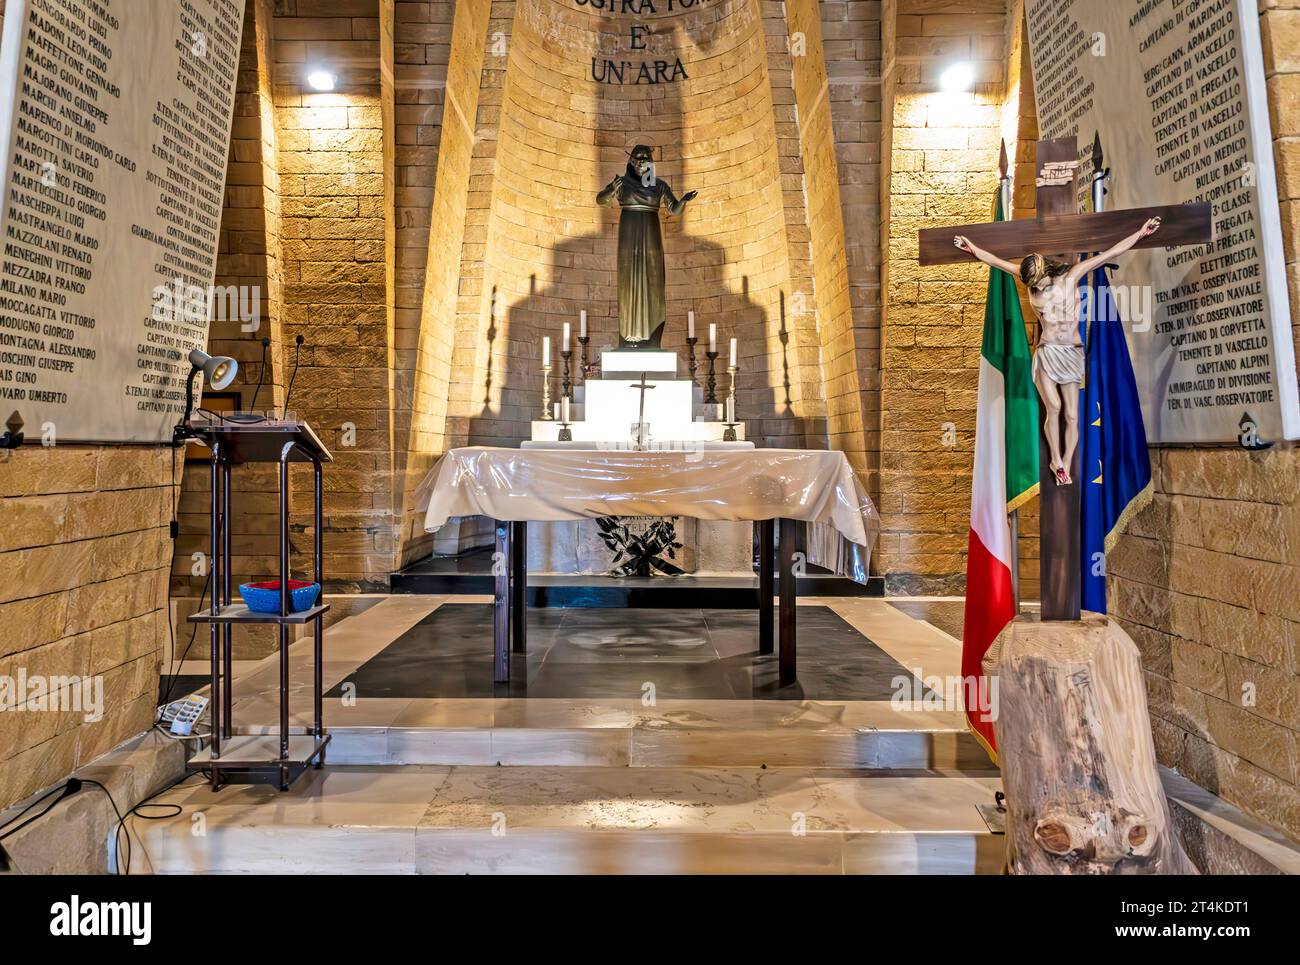 La cripta all'interno del monumento Big Rudder dedicato alla memoria dei marinai italiani morti nella prima guerra mondiale. Foto Stock